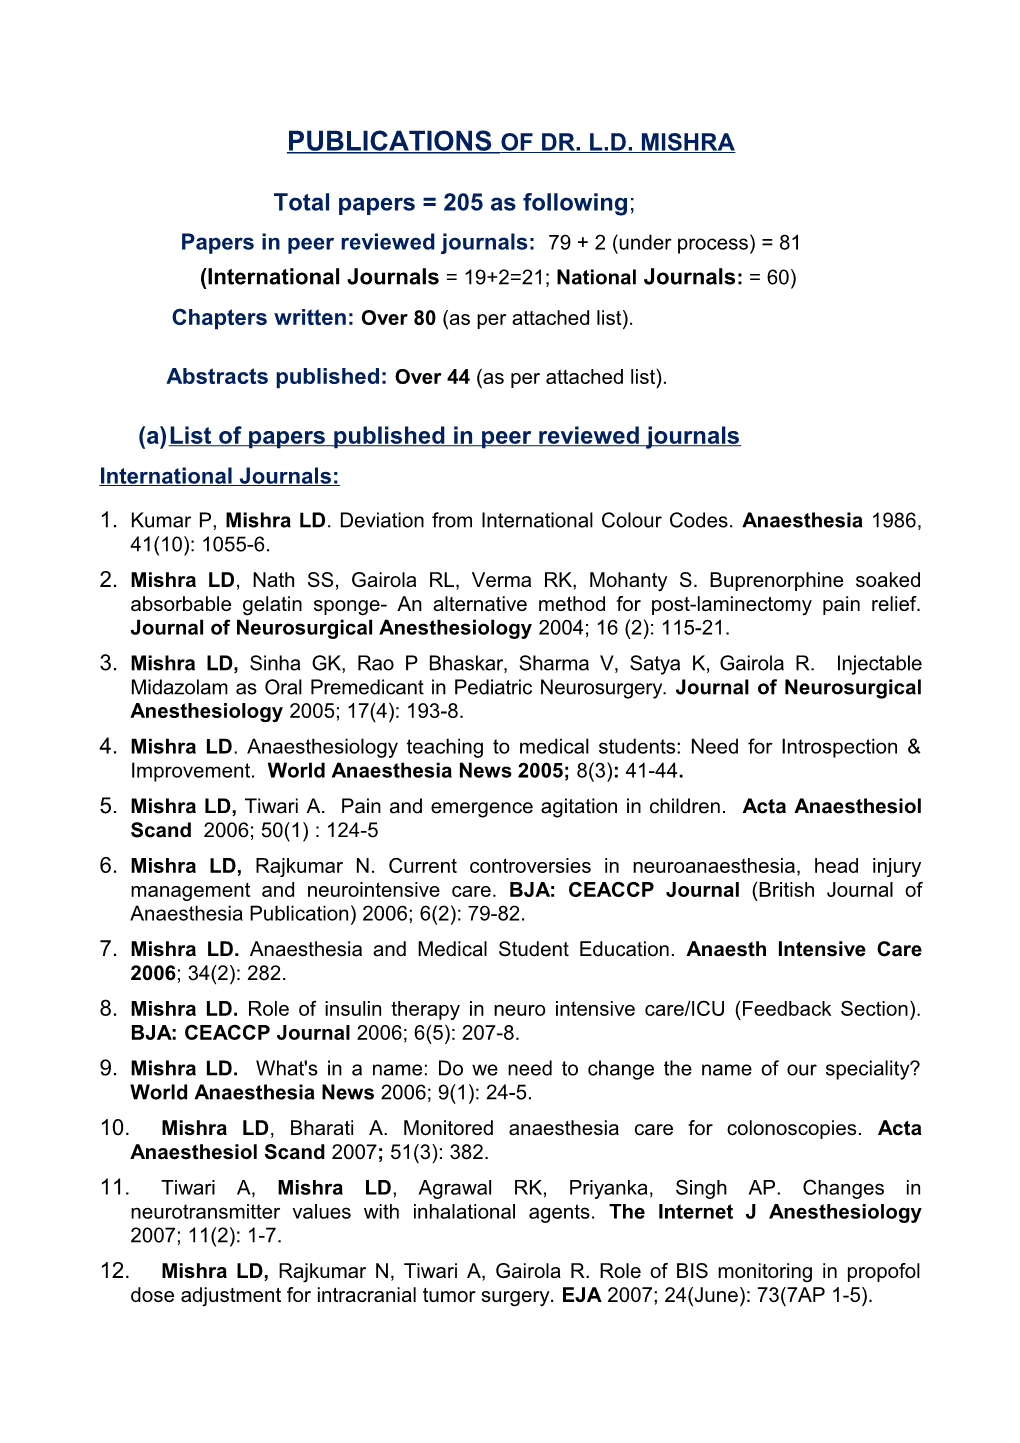 Publications of Dr. L.D. Mishra